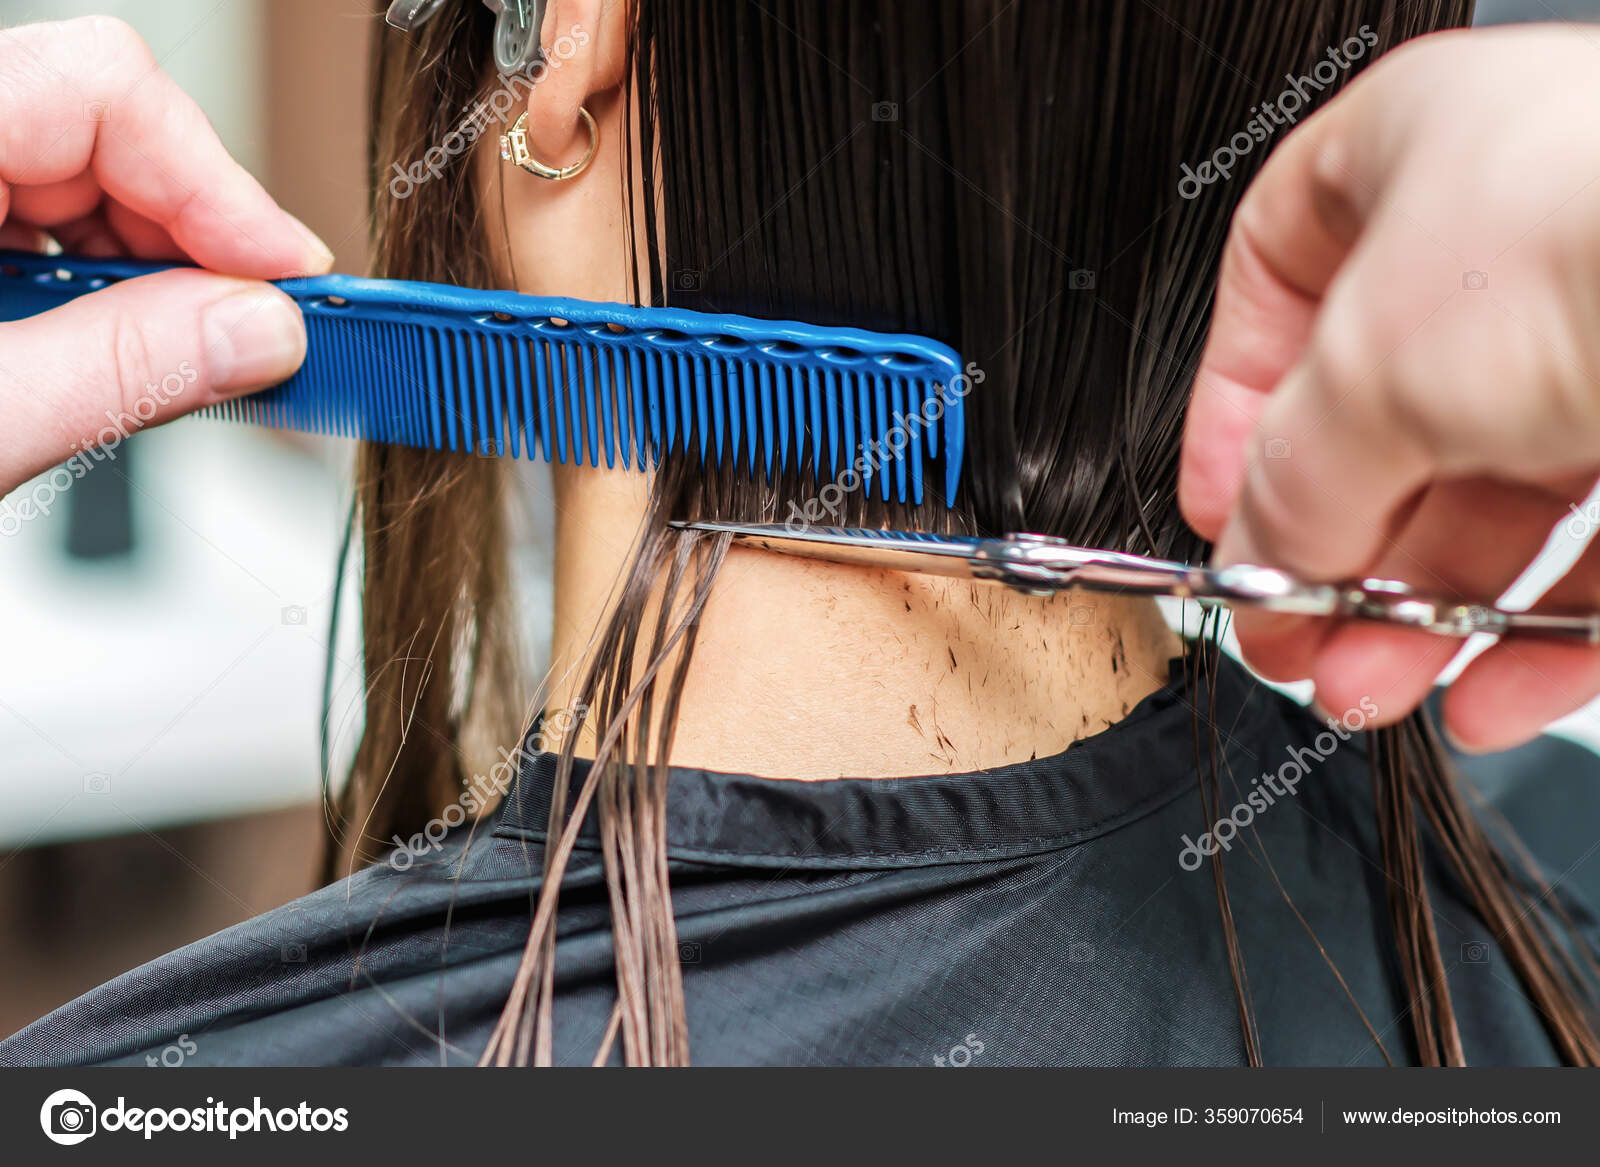 Cabeleireiro seca o cabelo com uma mulher de secador de cabelo no salão.  close-up.beauty e conceito de moda